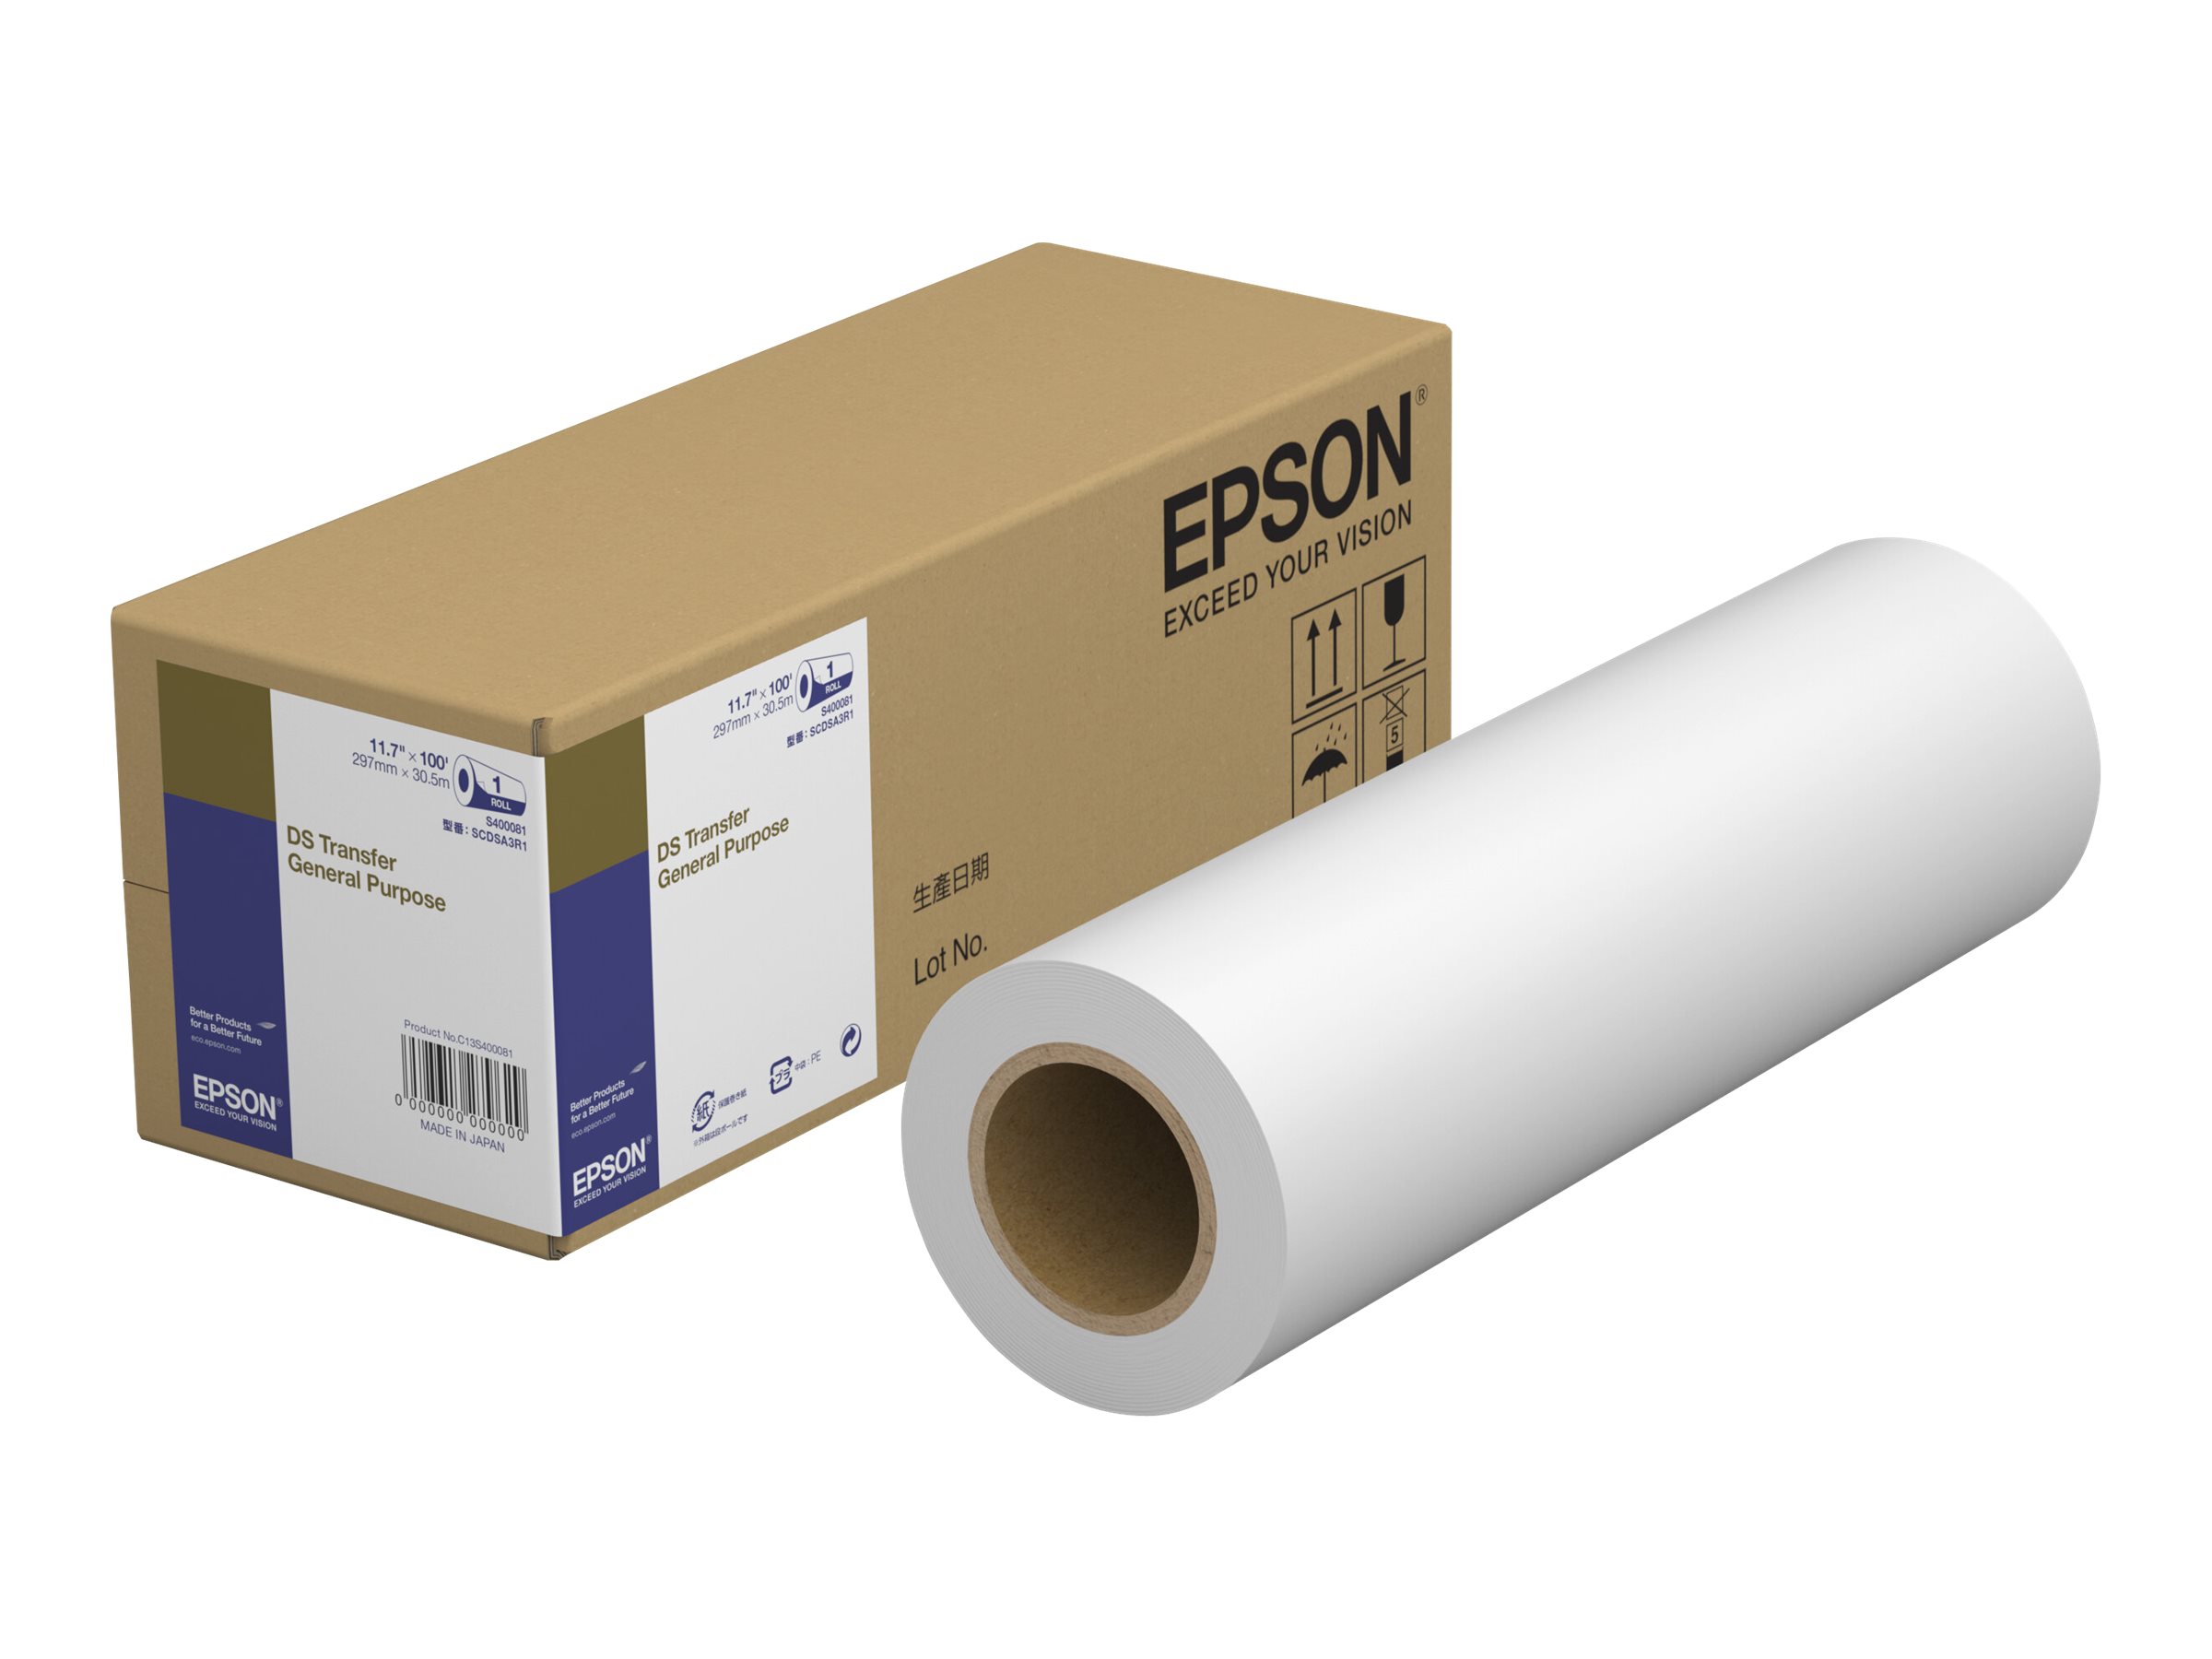 Epson DS Transfer General Purpose - Rolle A3 (29,7 cm x 30,5 m) 1 Rolle(n) Zwischenträgerpapier - für SureColor SC-F500, SC-F501